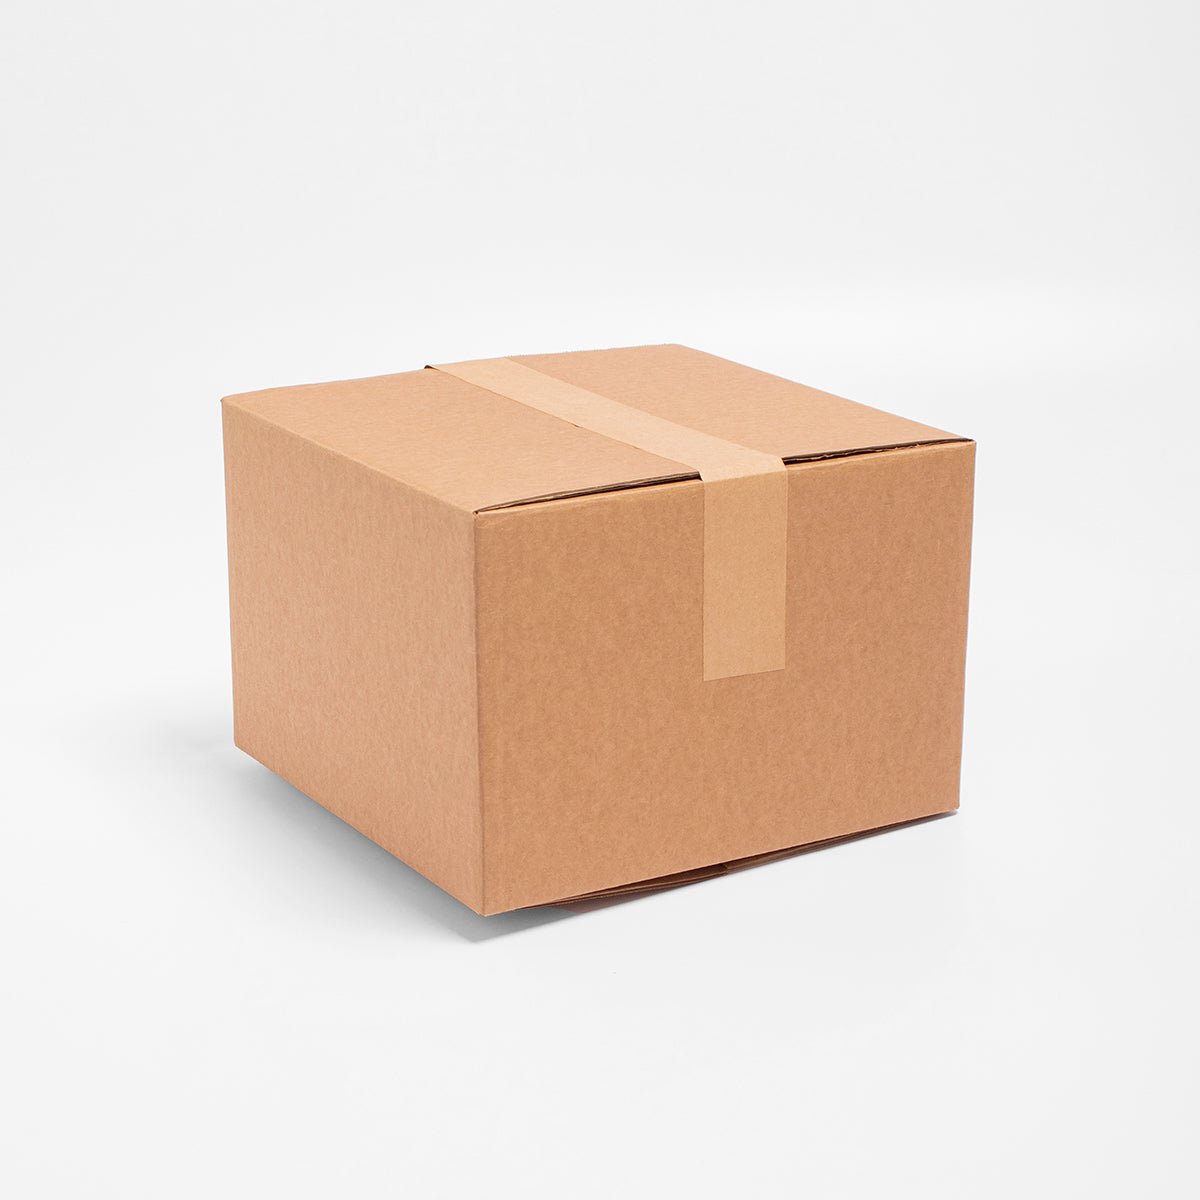 Caja de Cartón - 20 x 20 x 10 cm - Cuadrada - Skyboxes México